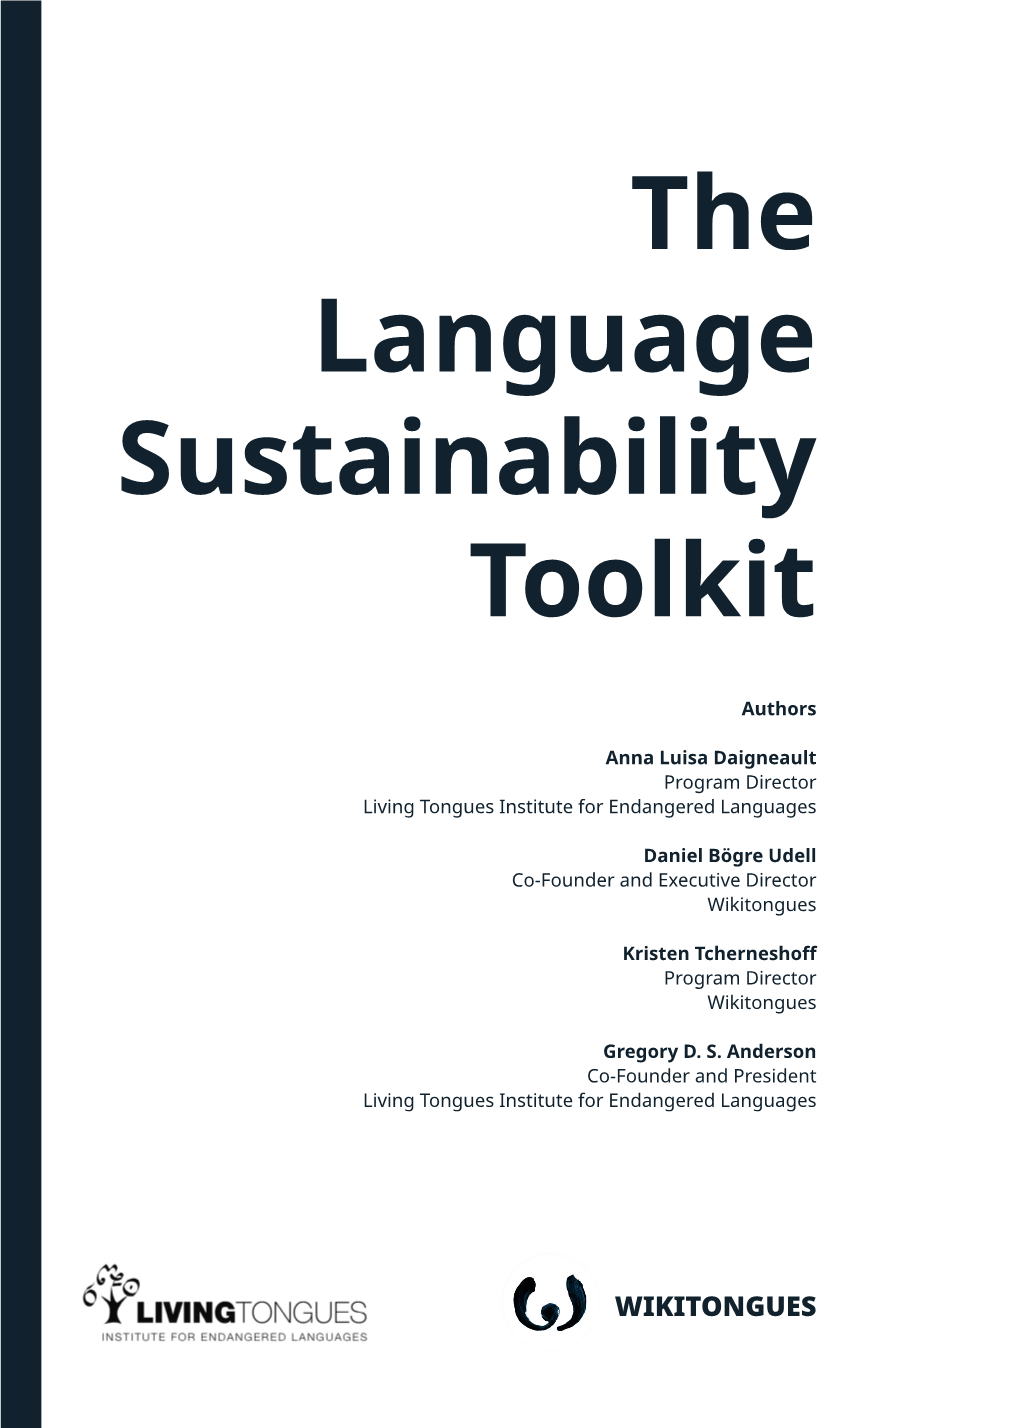 The Language Sustainability Toolkit